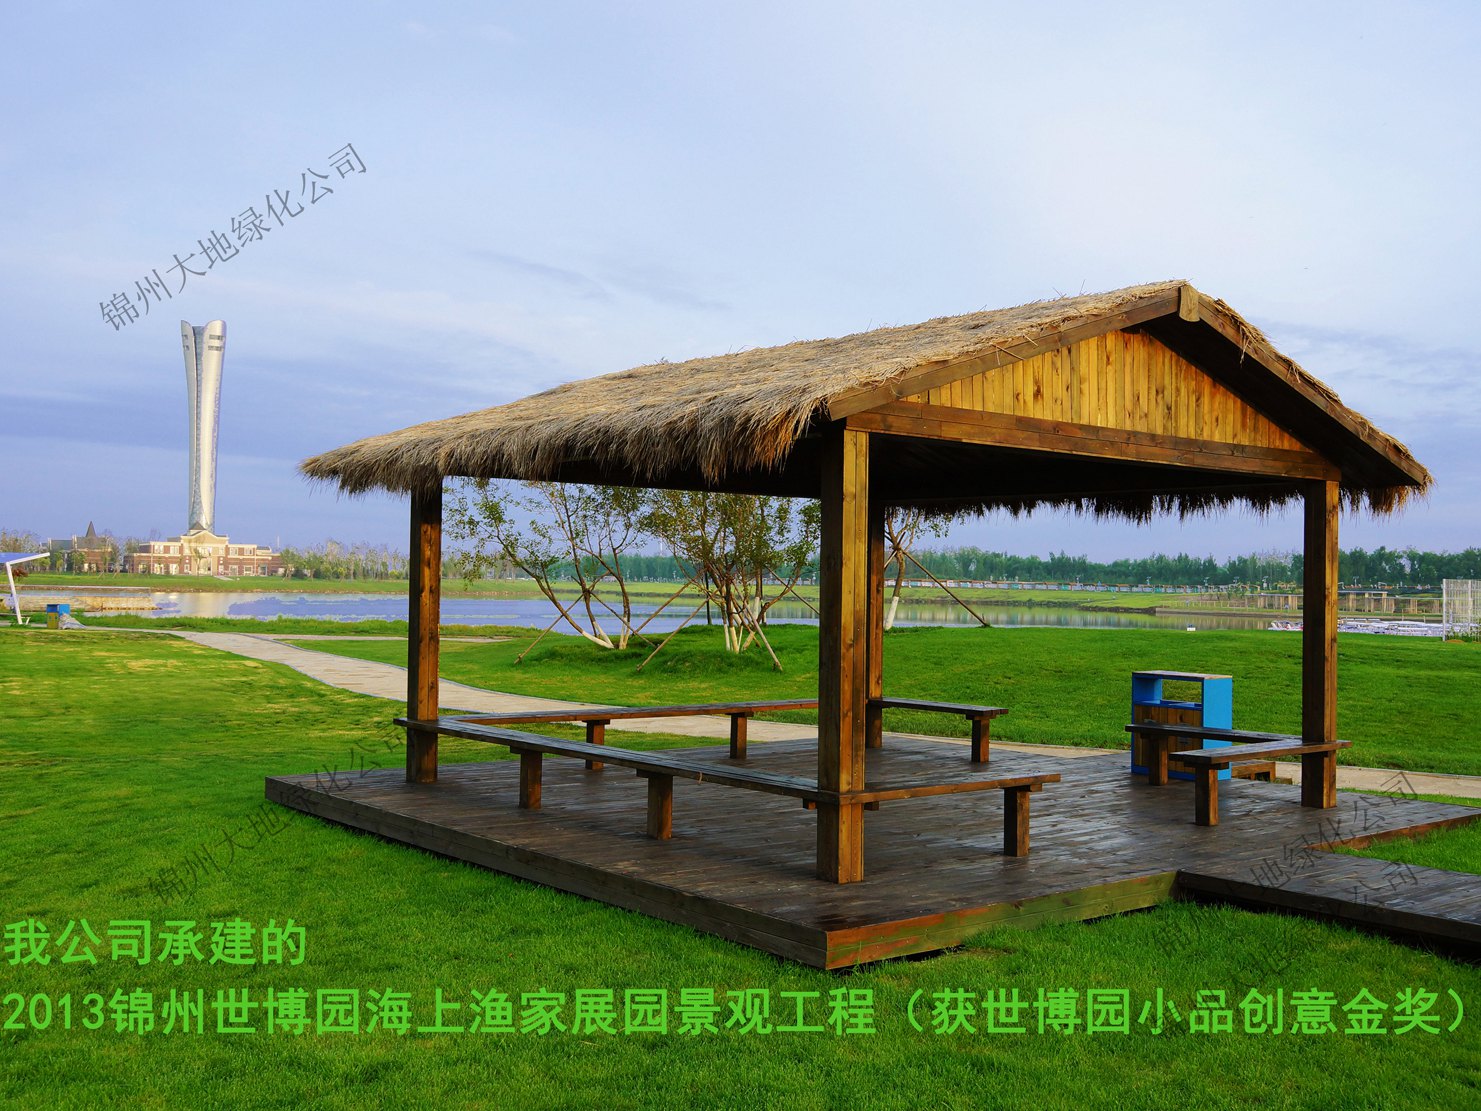 2013錦州世博園海上漁家景觀工程